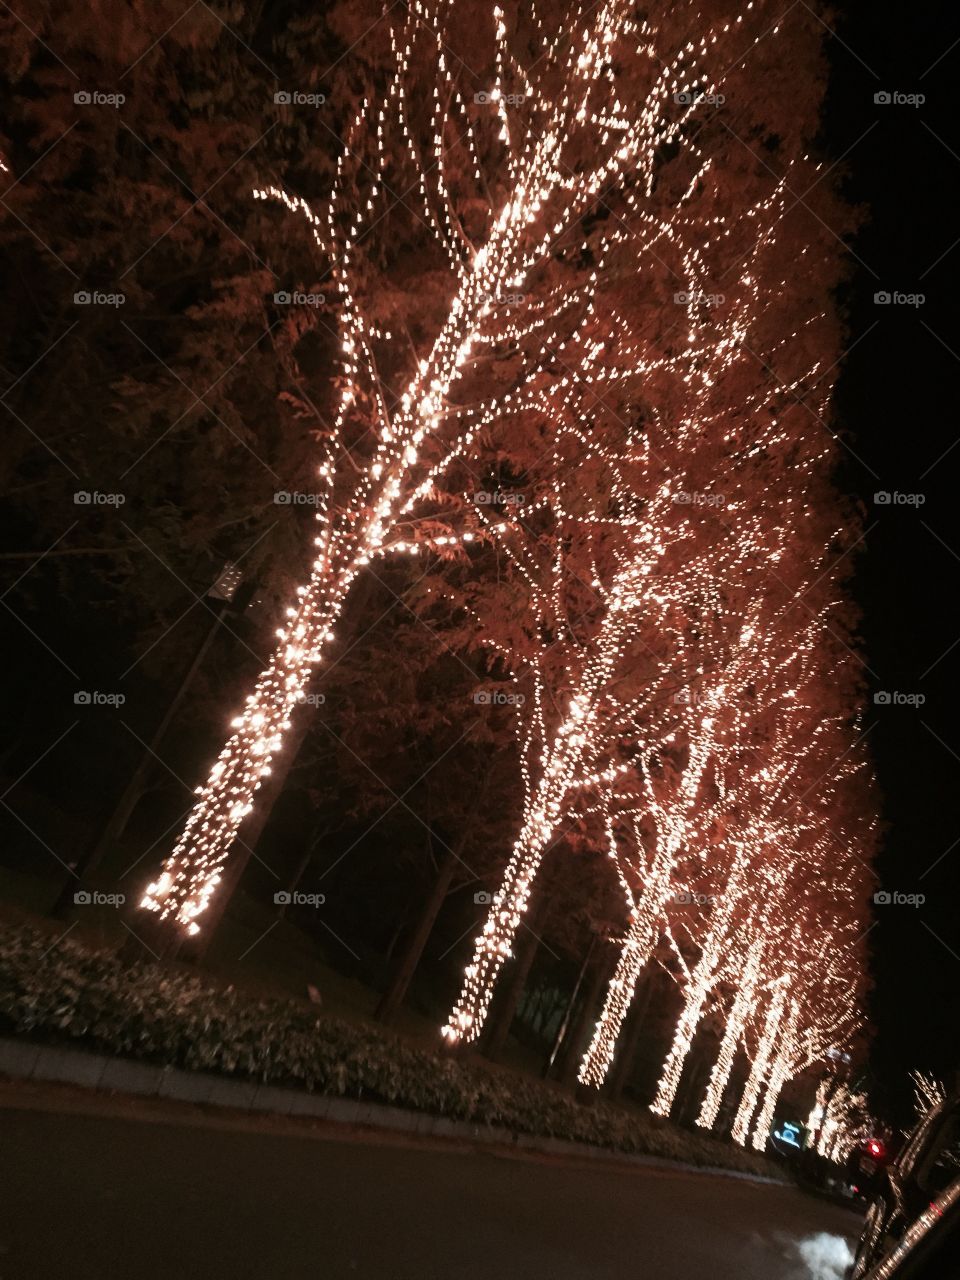 Lightning tree. in japan